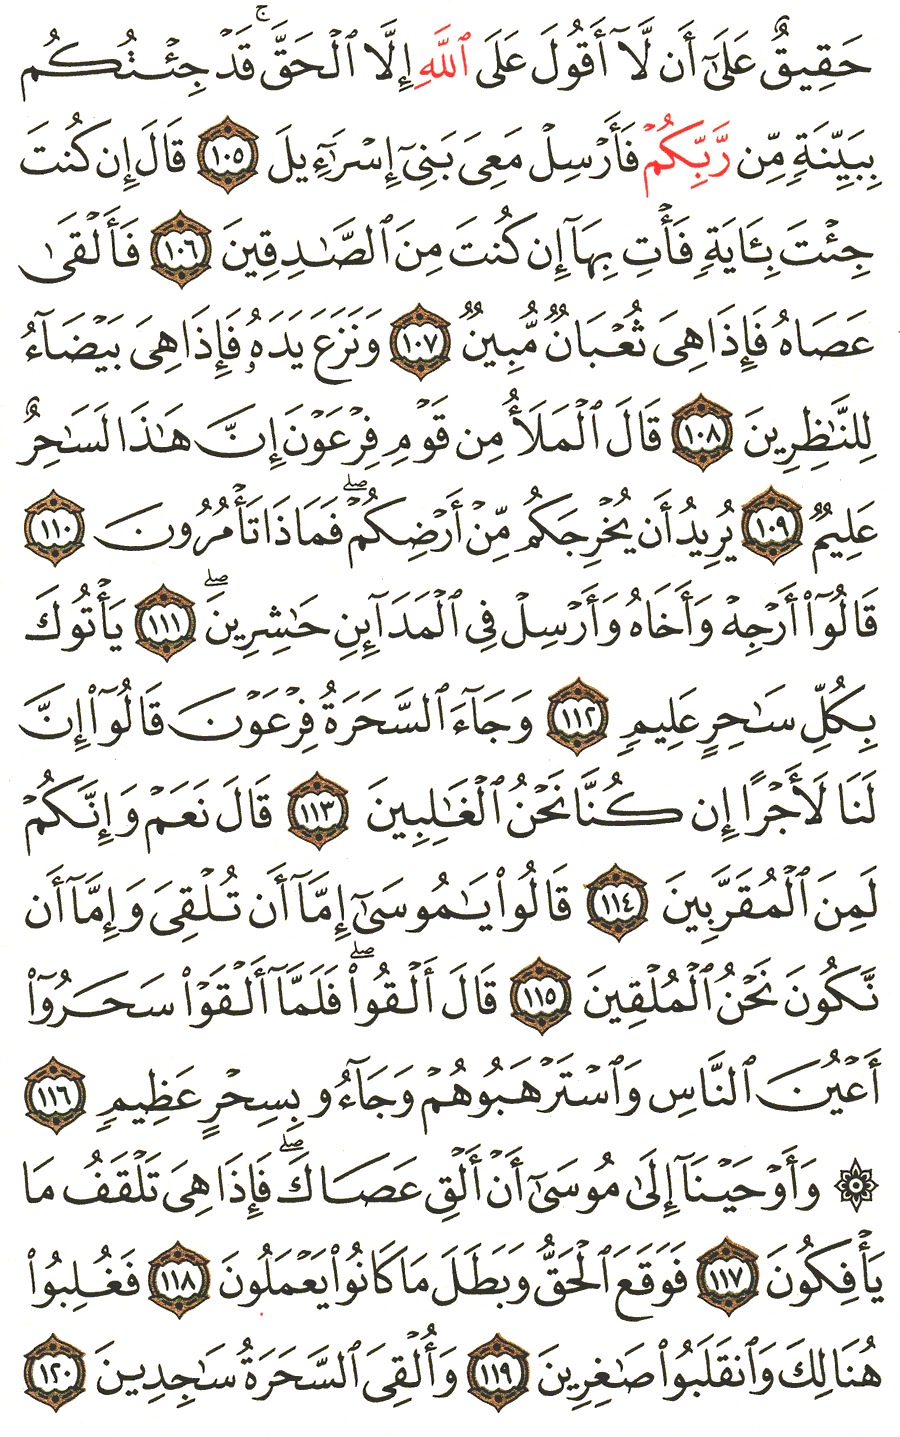 الصفحة 164 من القرآن الكريم